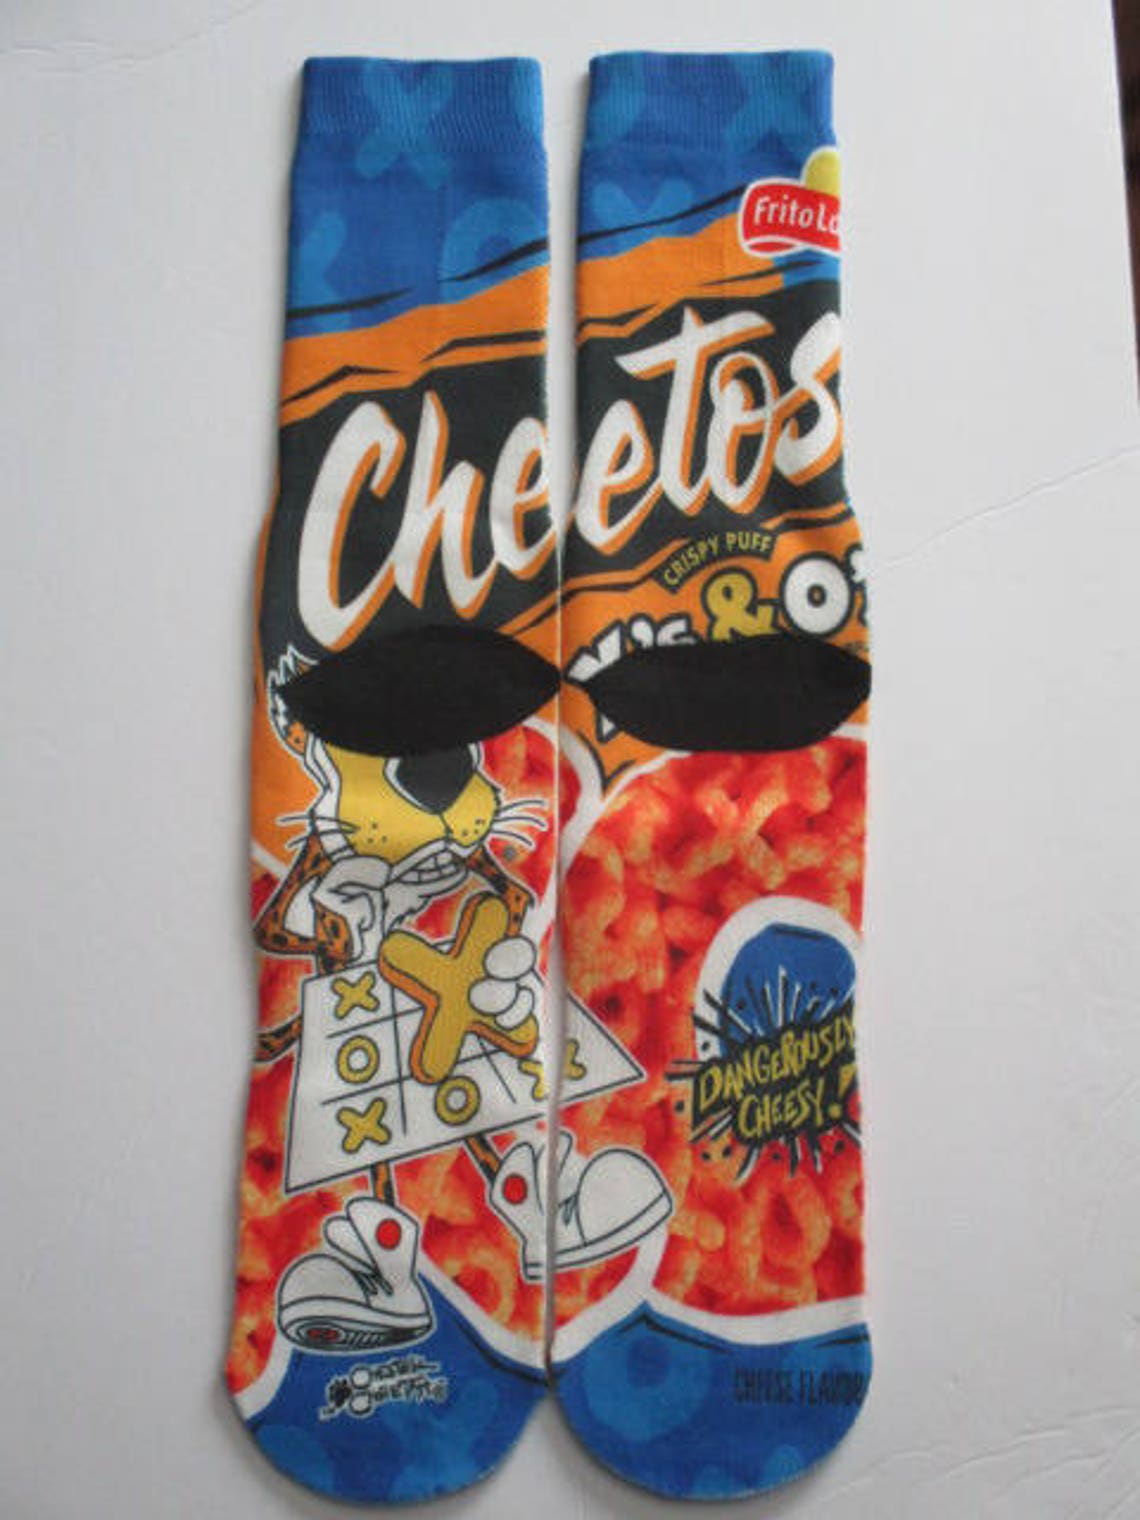 Cheetos x's and o's socks Free Random Keychain Novelty | Etsy